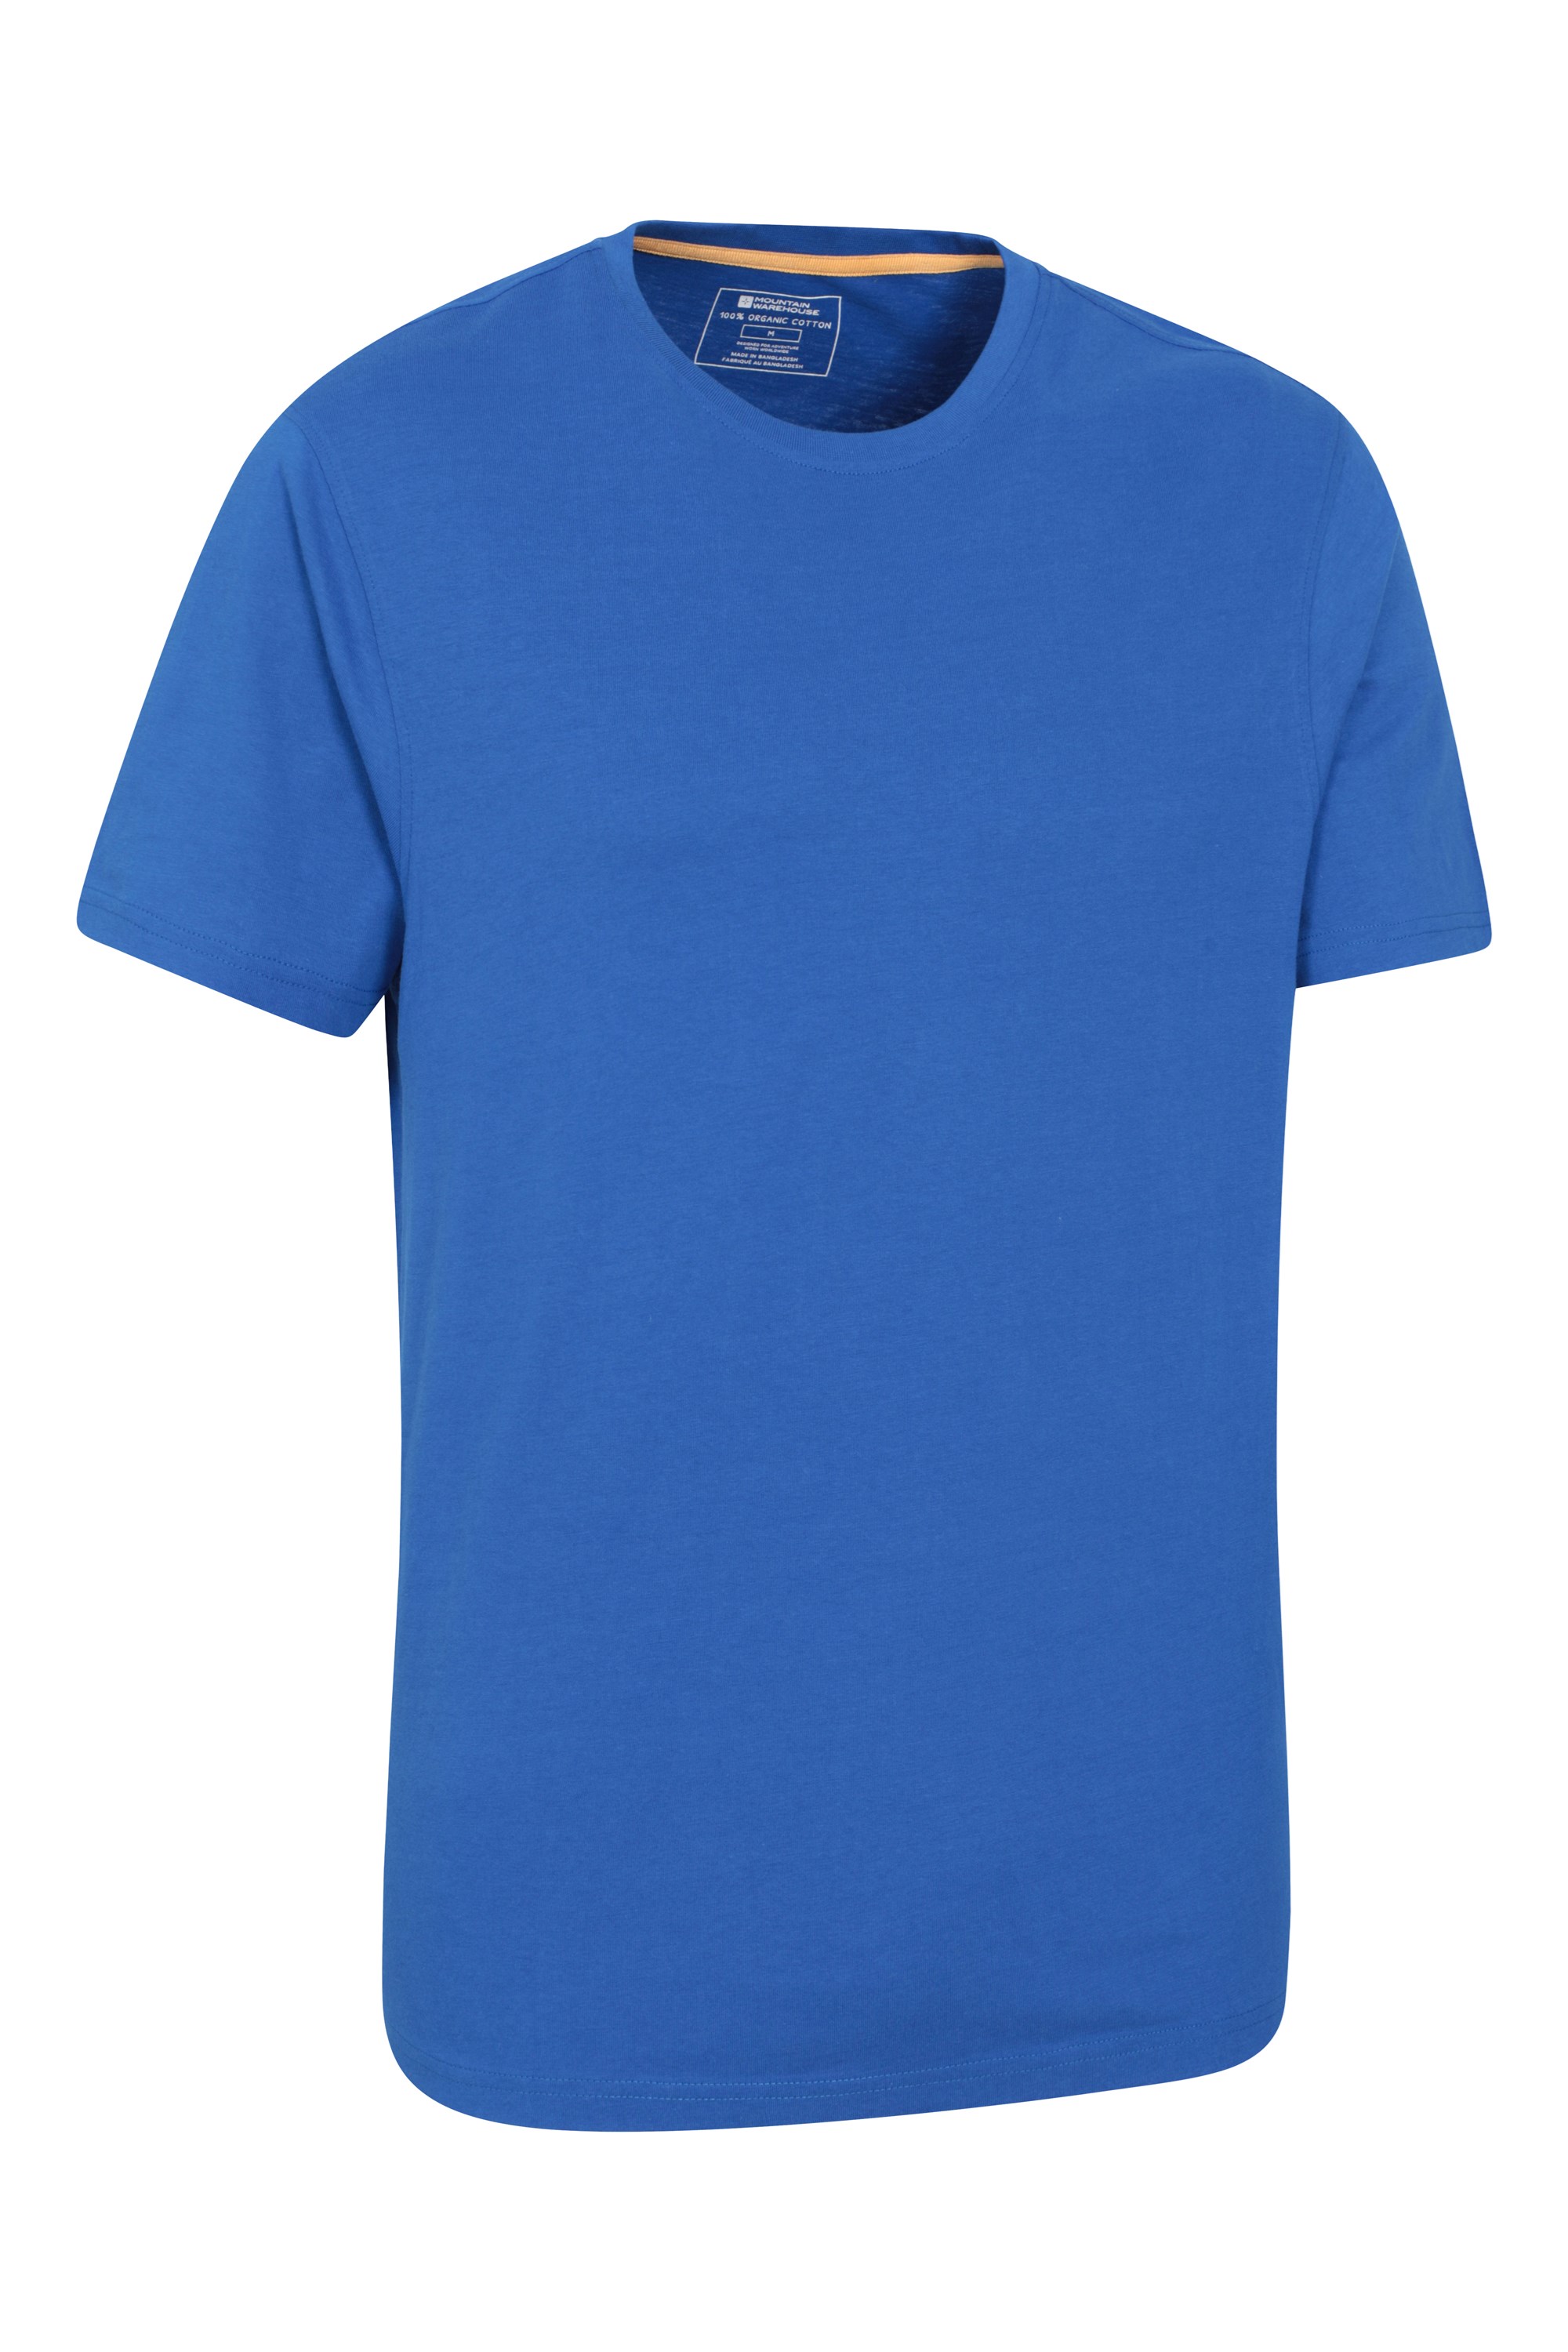 T-Shirt 100 % Coton Biologique Haut léger Idéal pour l'extérieur et Les Triathlons Marque : Mountain WarehouseMountain Warehouse Tee-Shirt de Cyclisme pour Homme décontracté Respirant 